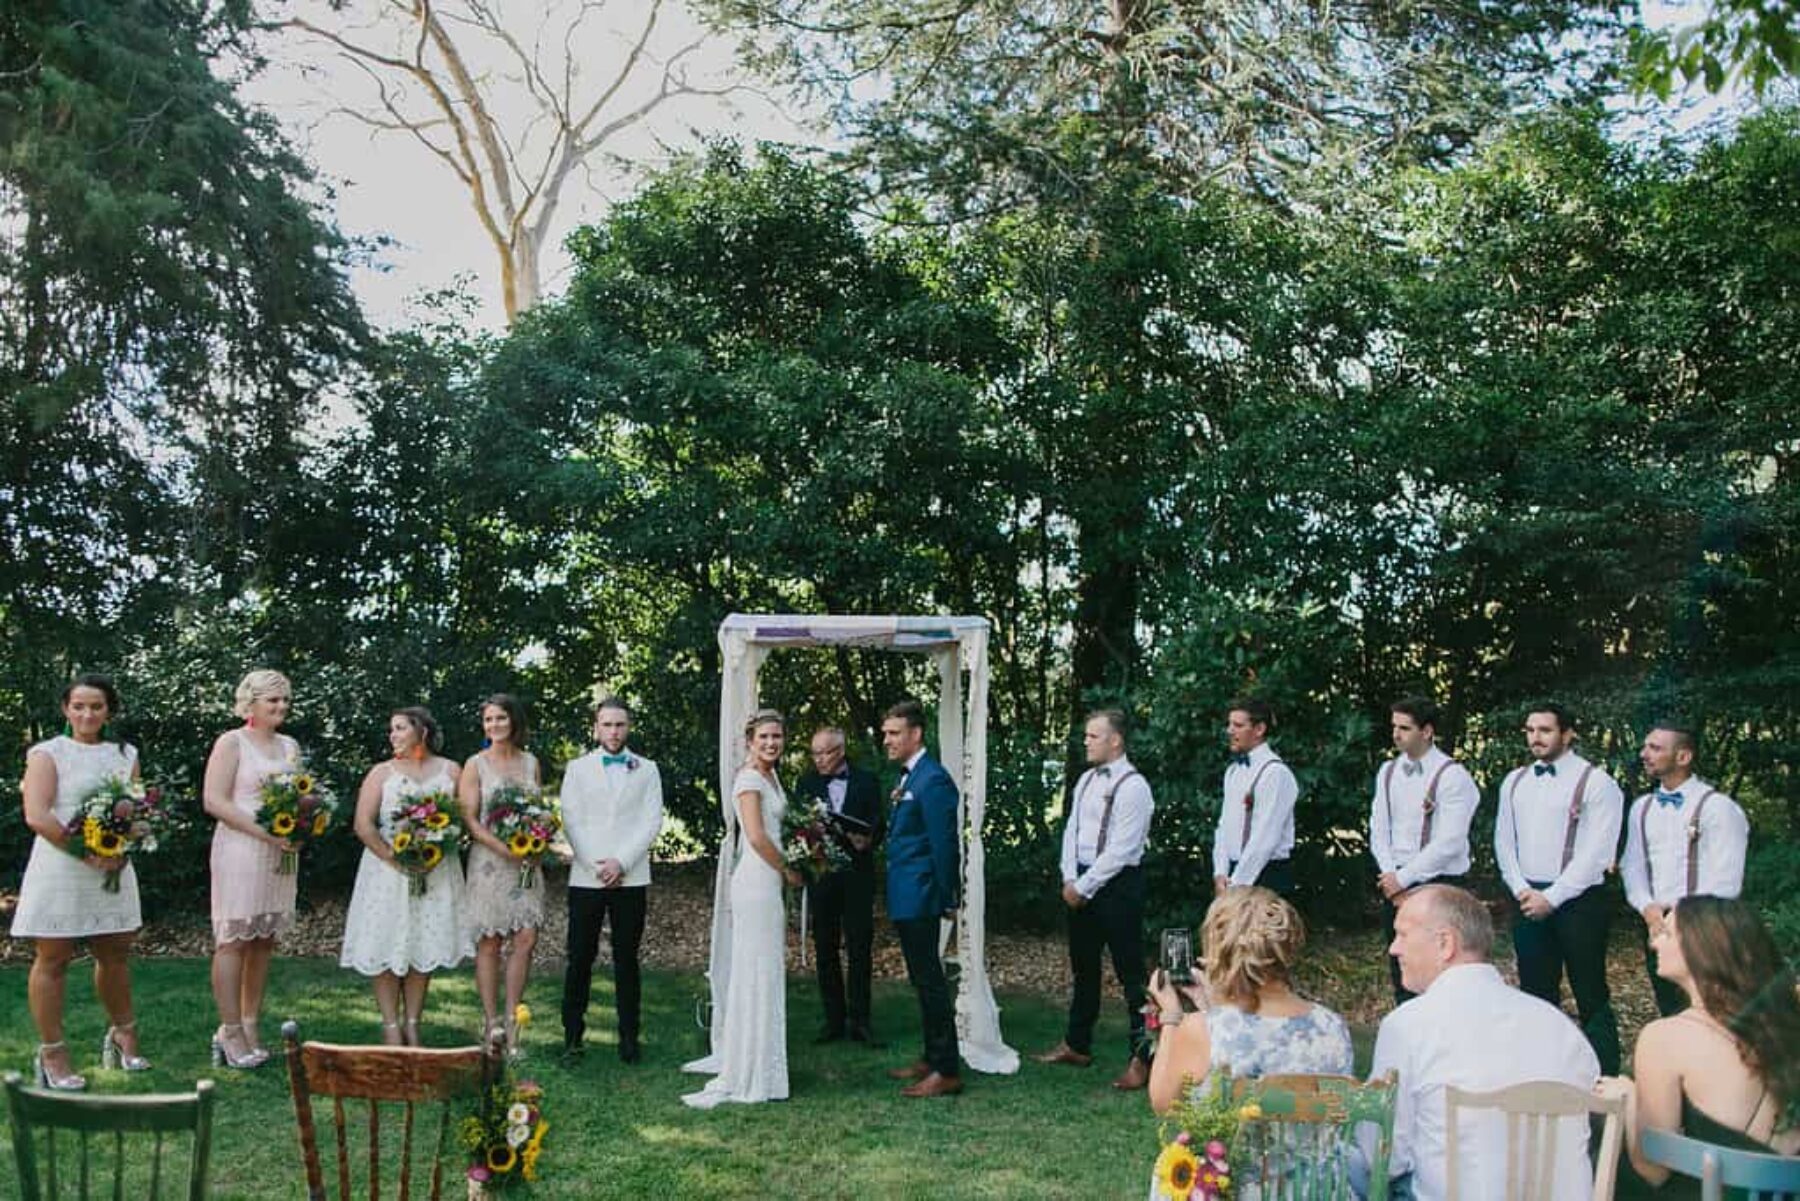 Colourful garden wedding at Ivy & the Fox - Photography by John Benavente